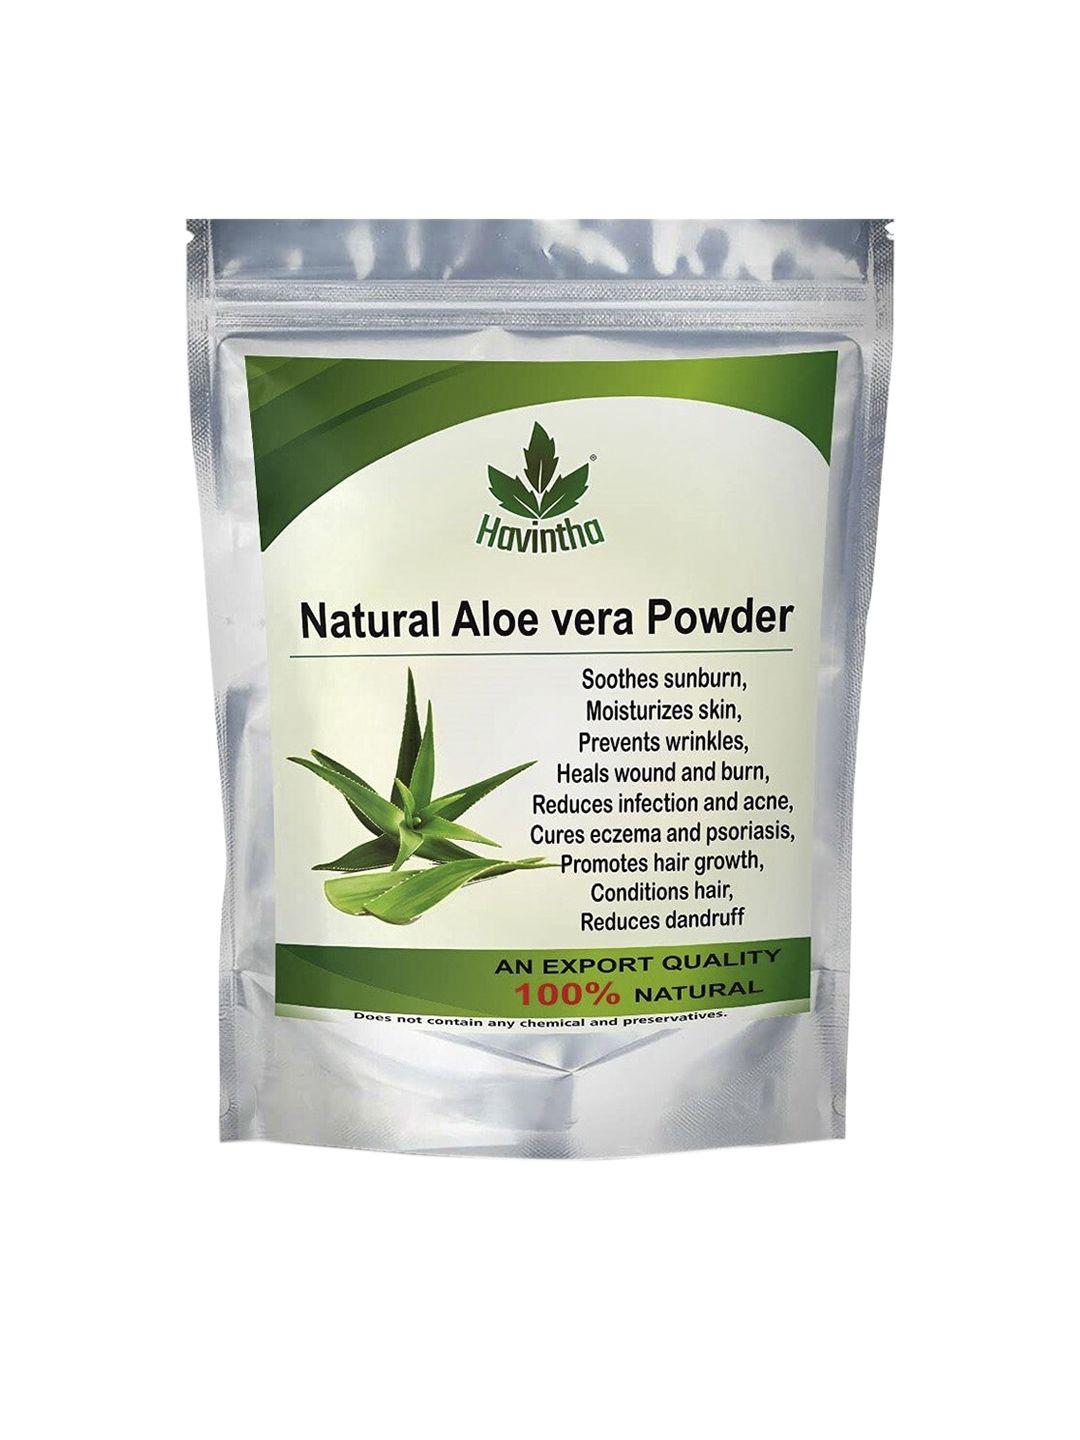 havintha natural aloe vera powder for hair & face